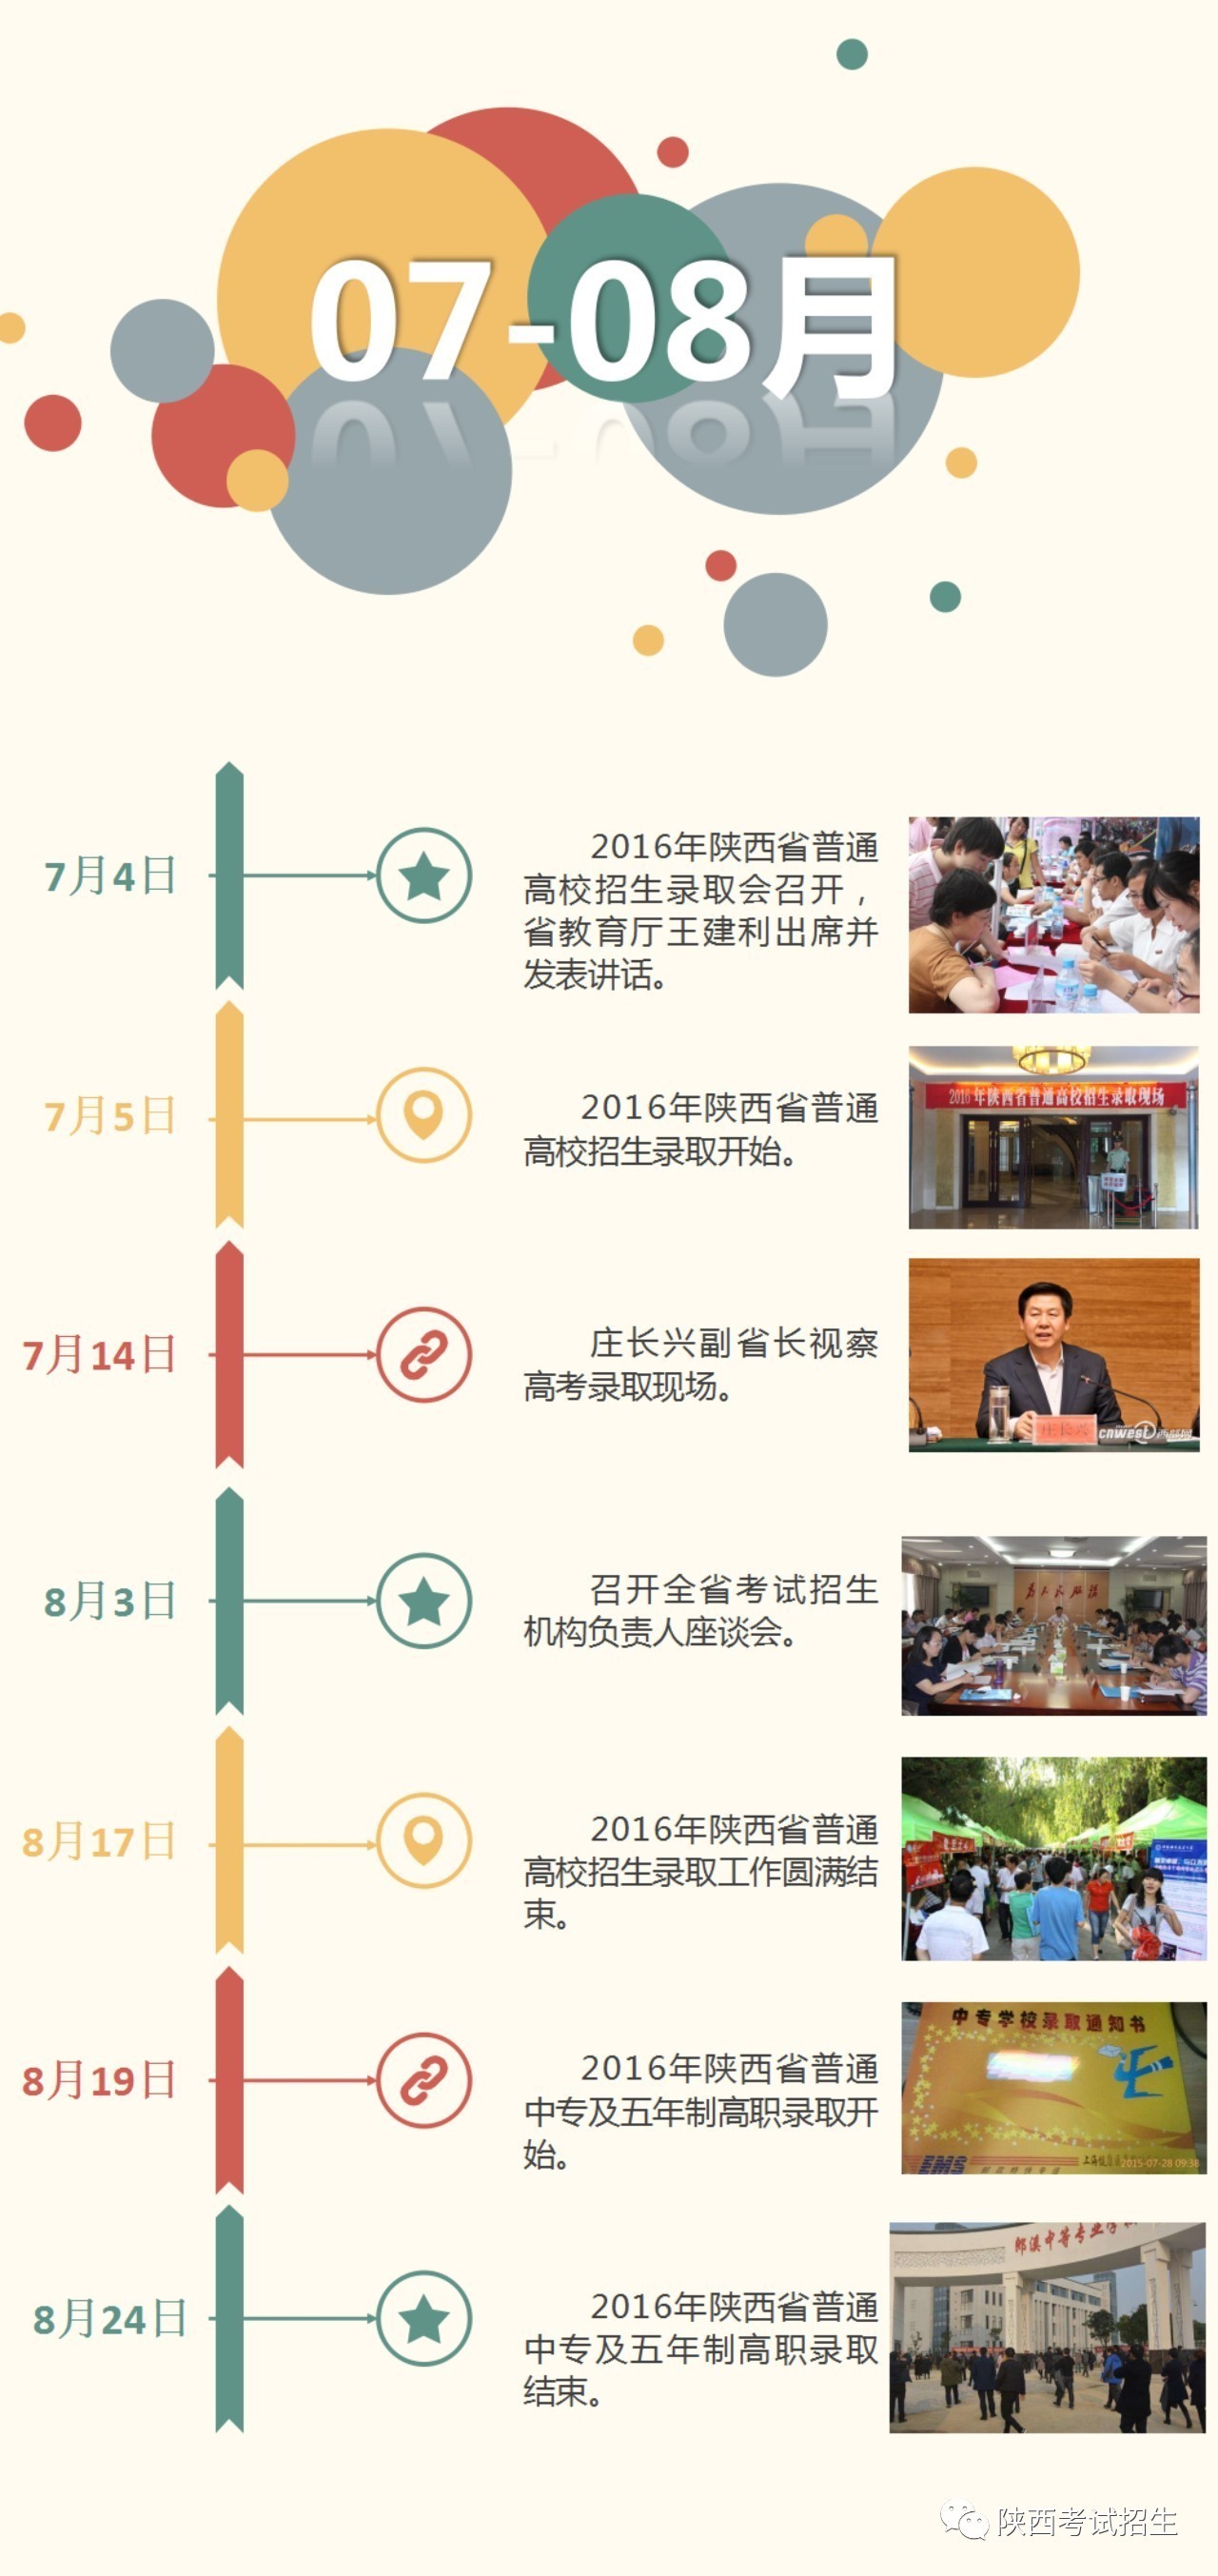 不忘过往,不畏将来-陕西省考试管理中心的201